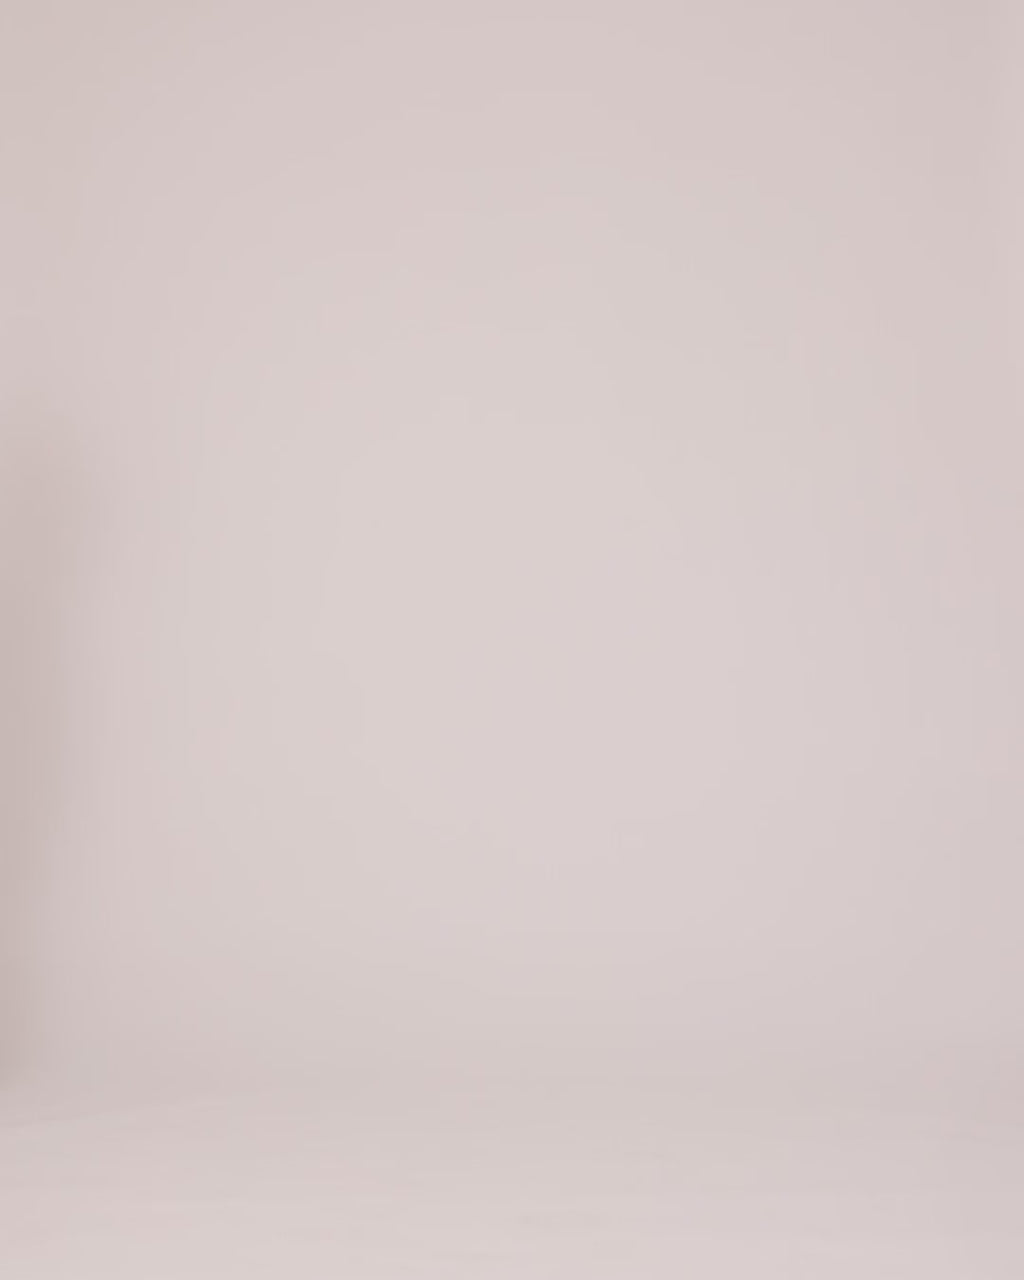 Bukser med afslappet pasform i den populære farve: Spring Stone. AnkerMD wide pants har almindelig talje med læg foran og brede, lange ben. Dekorative paspolerede lommer bagpå og sidelommer.